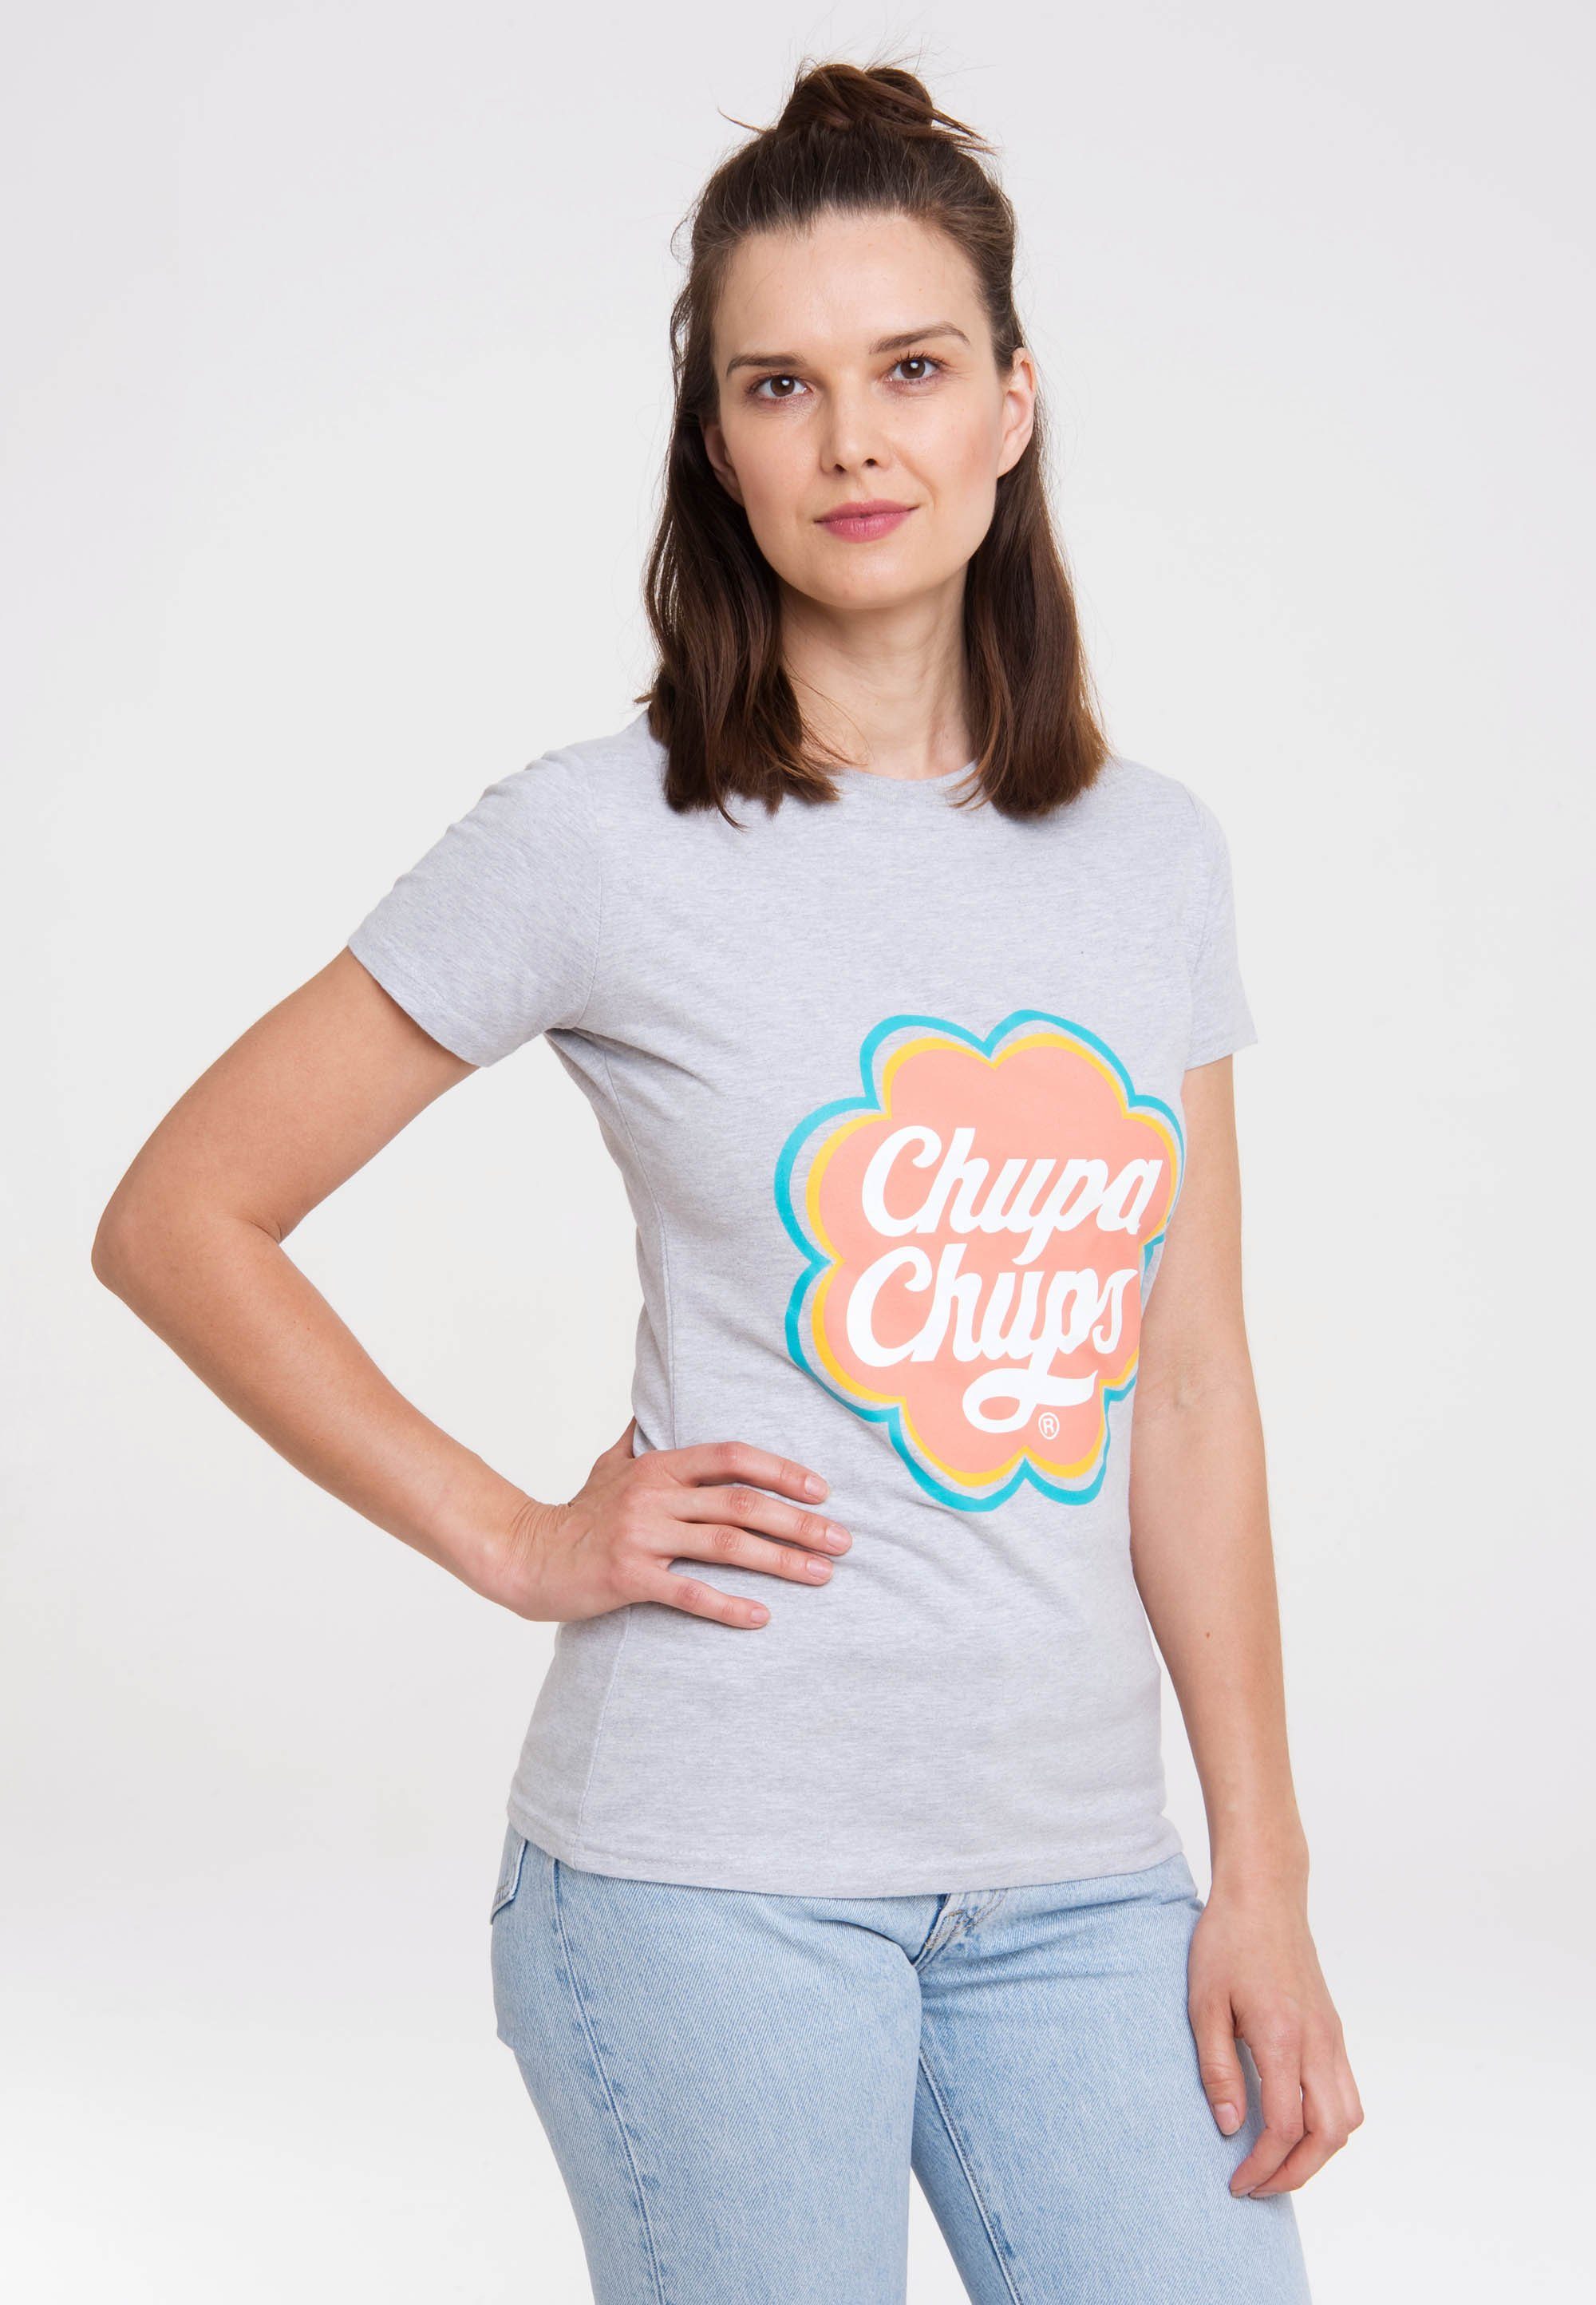 lizenzierten Chups Chupa LOGOSHIRT T-Shirt mit Design